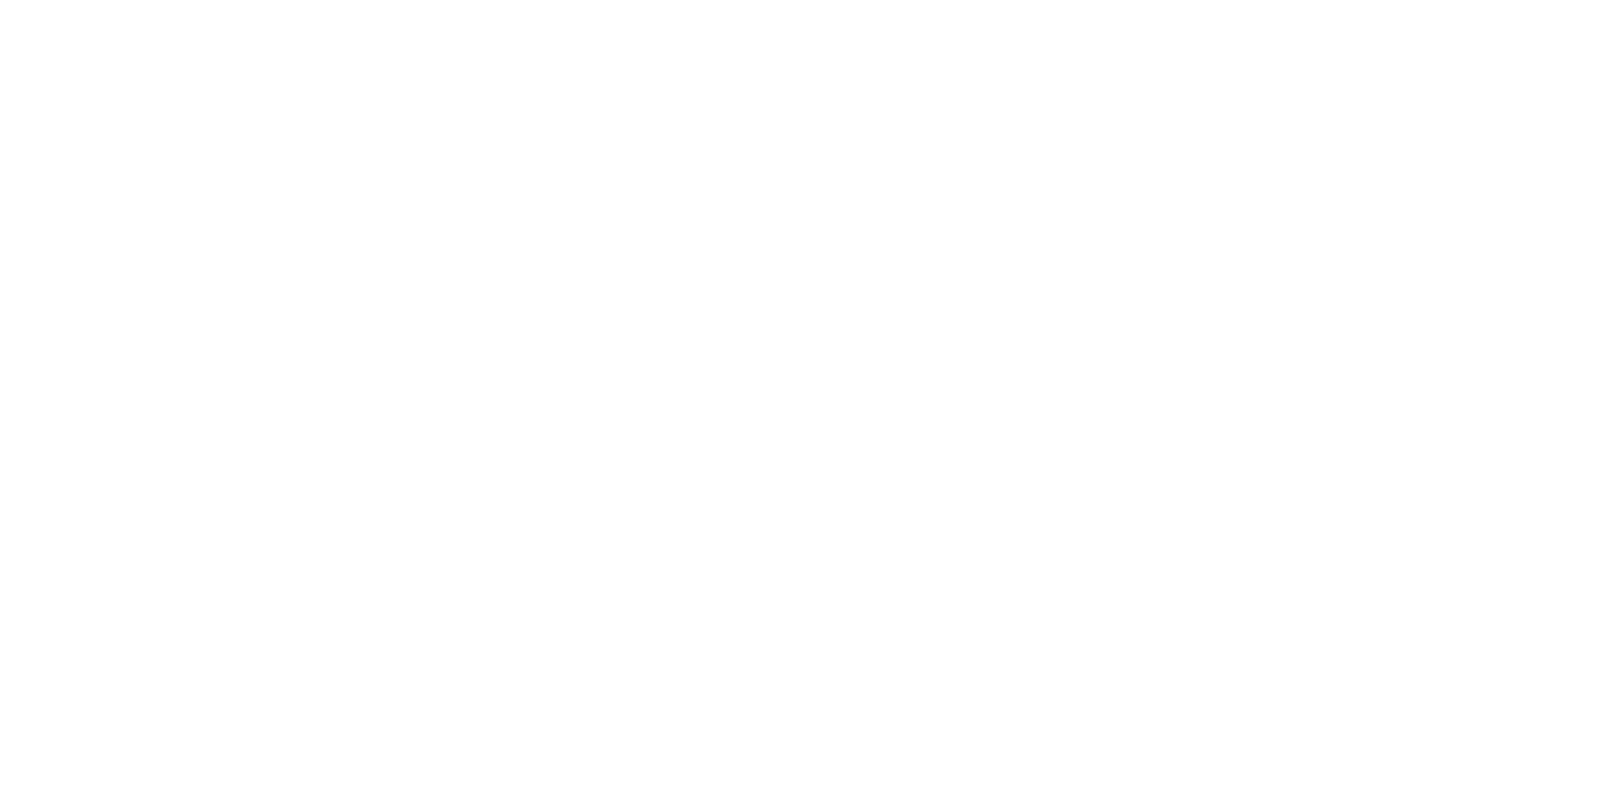 French Lick Cabins at Patoka Lake